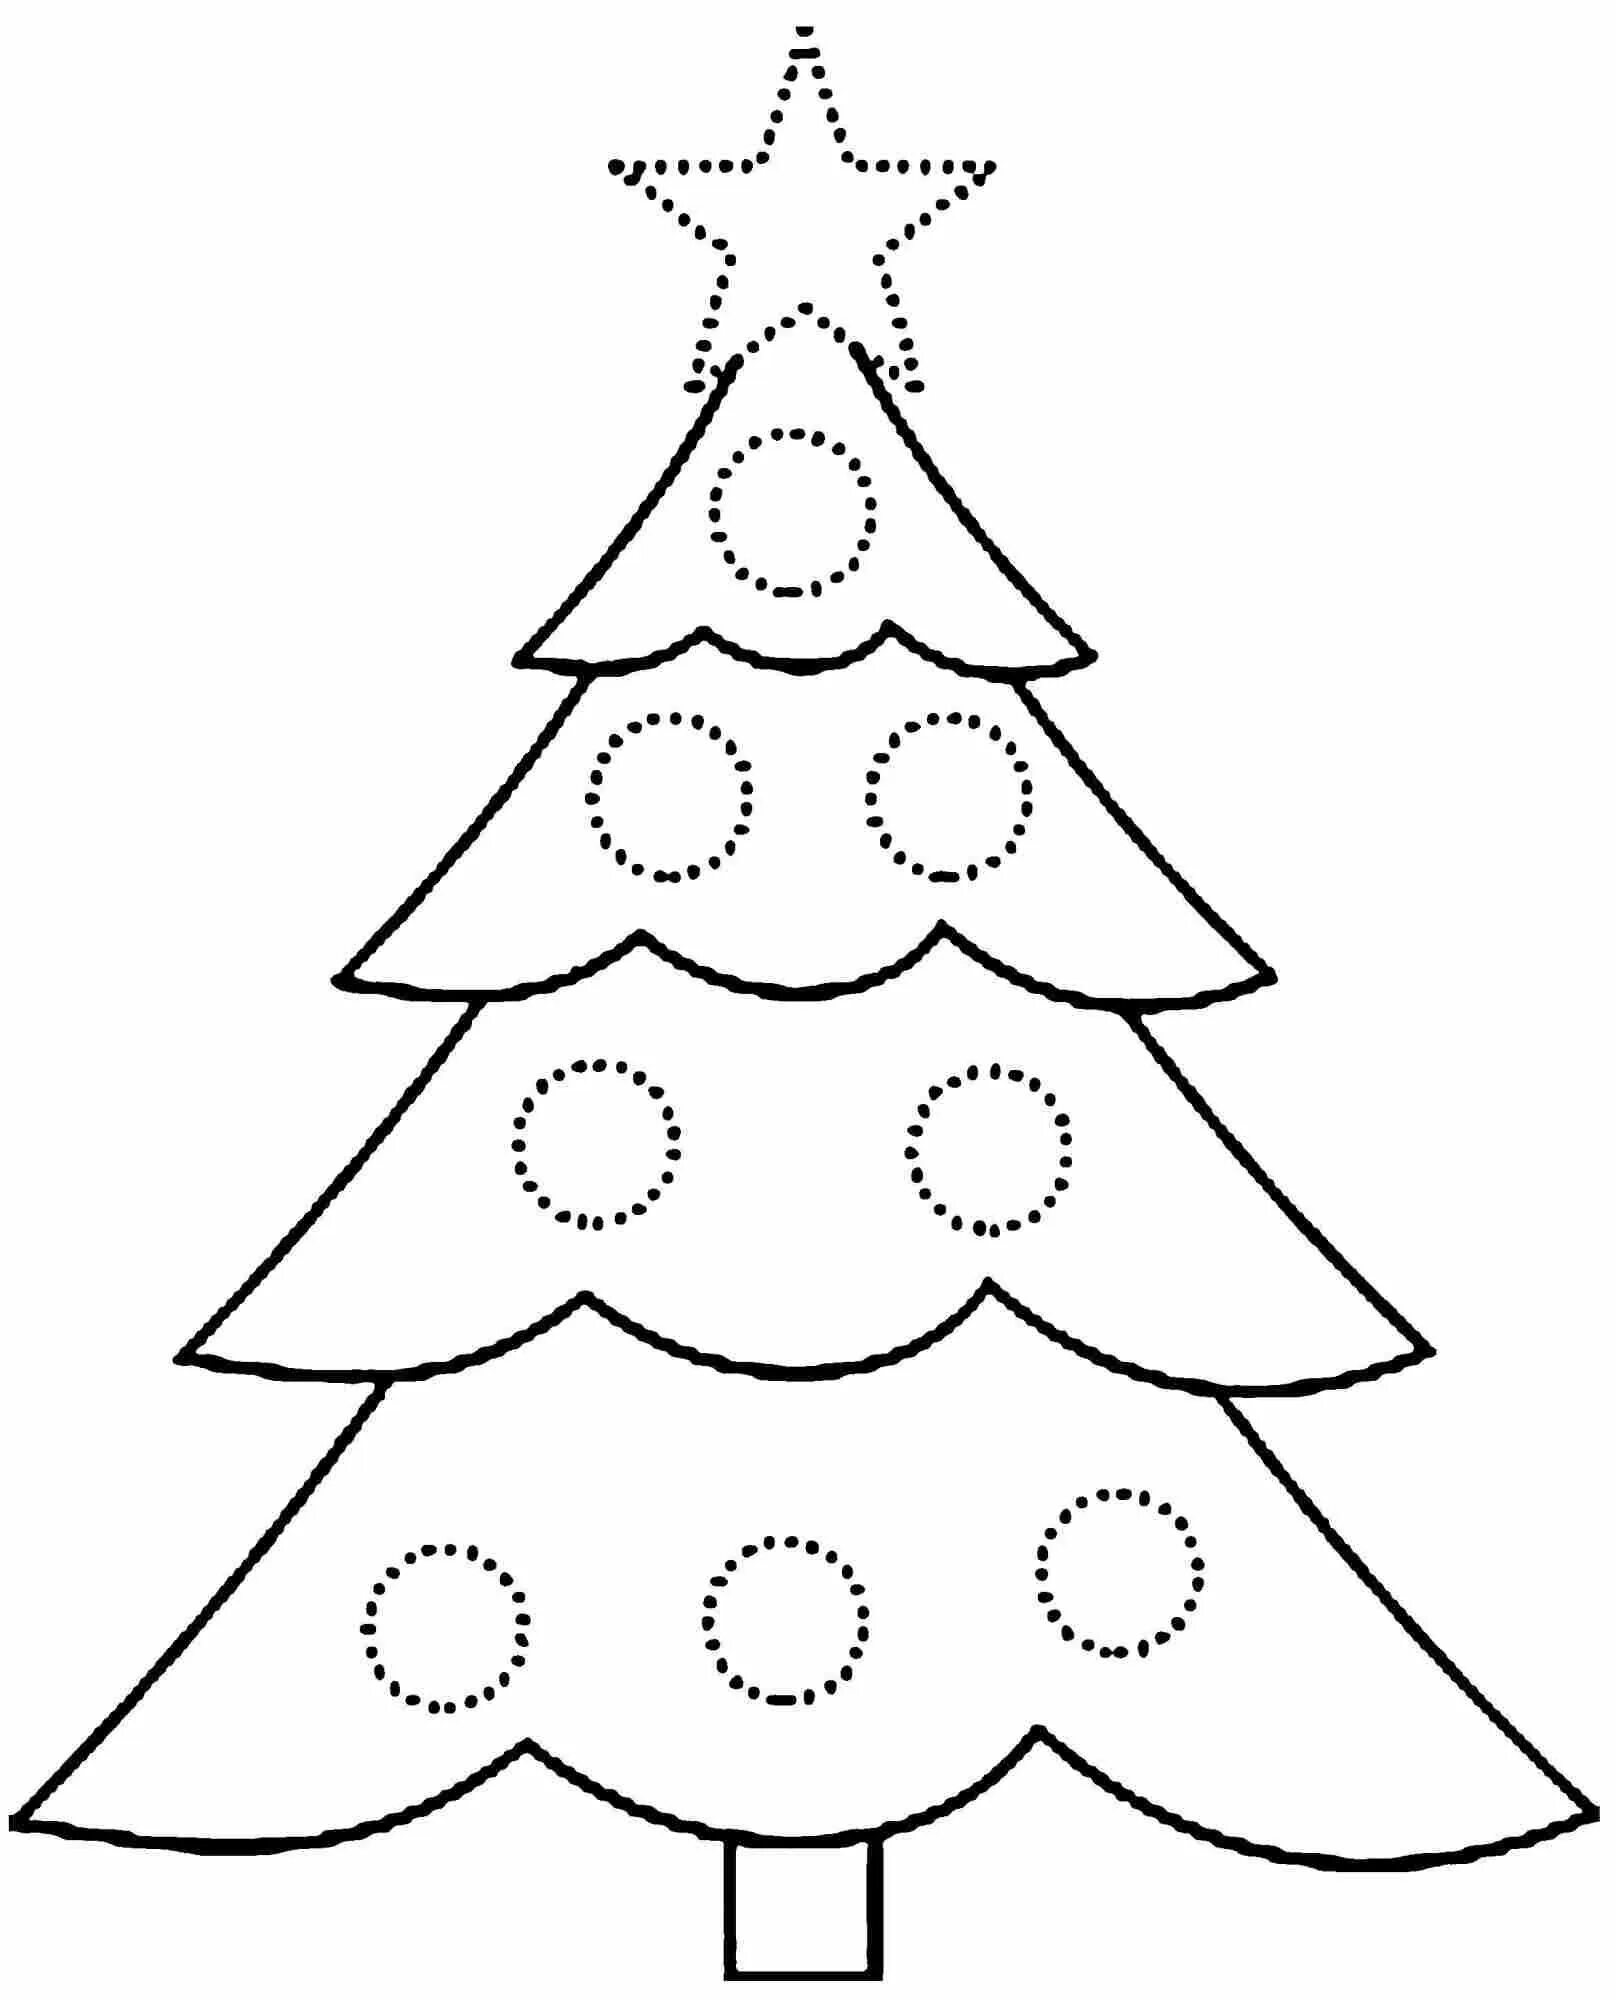 Раскраска «великолепная рождественская елка» для детей 3-4 лет